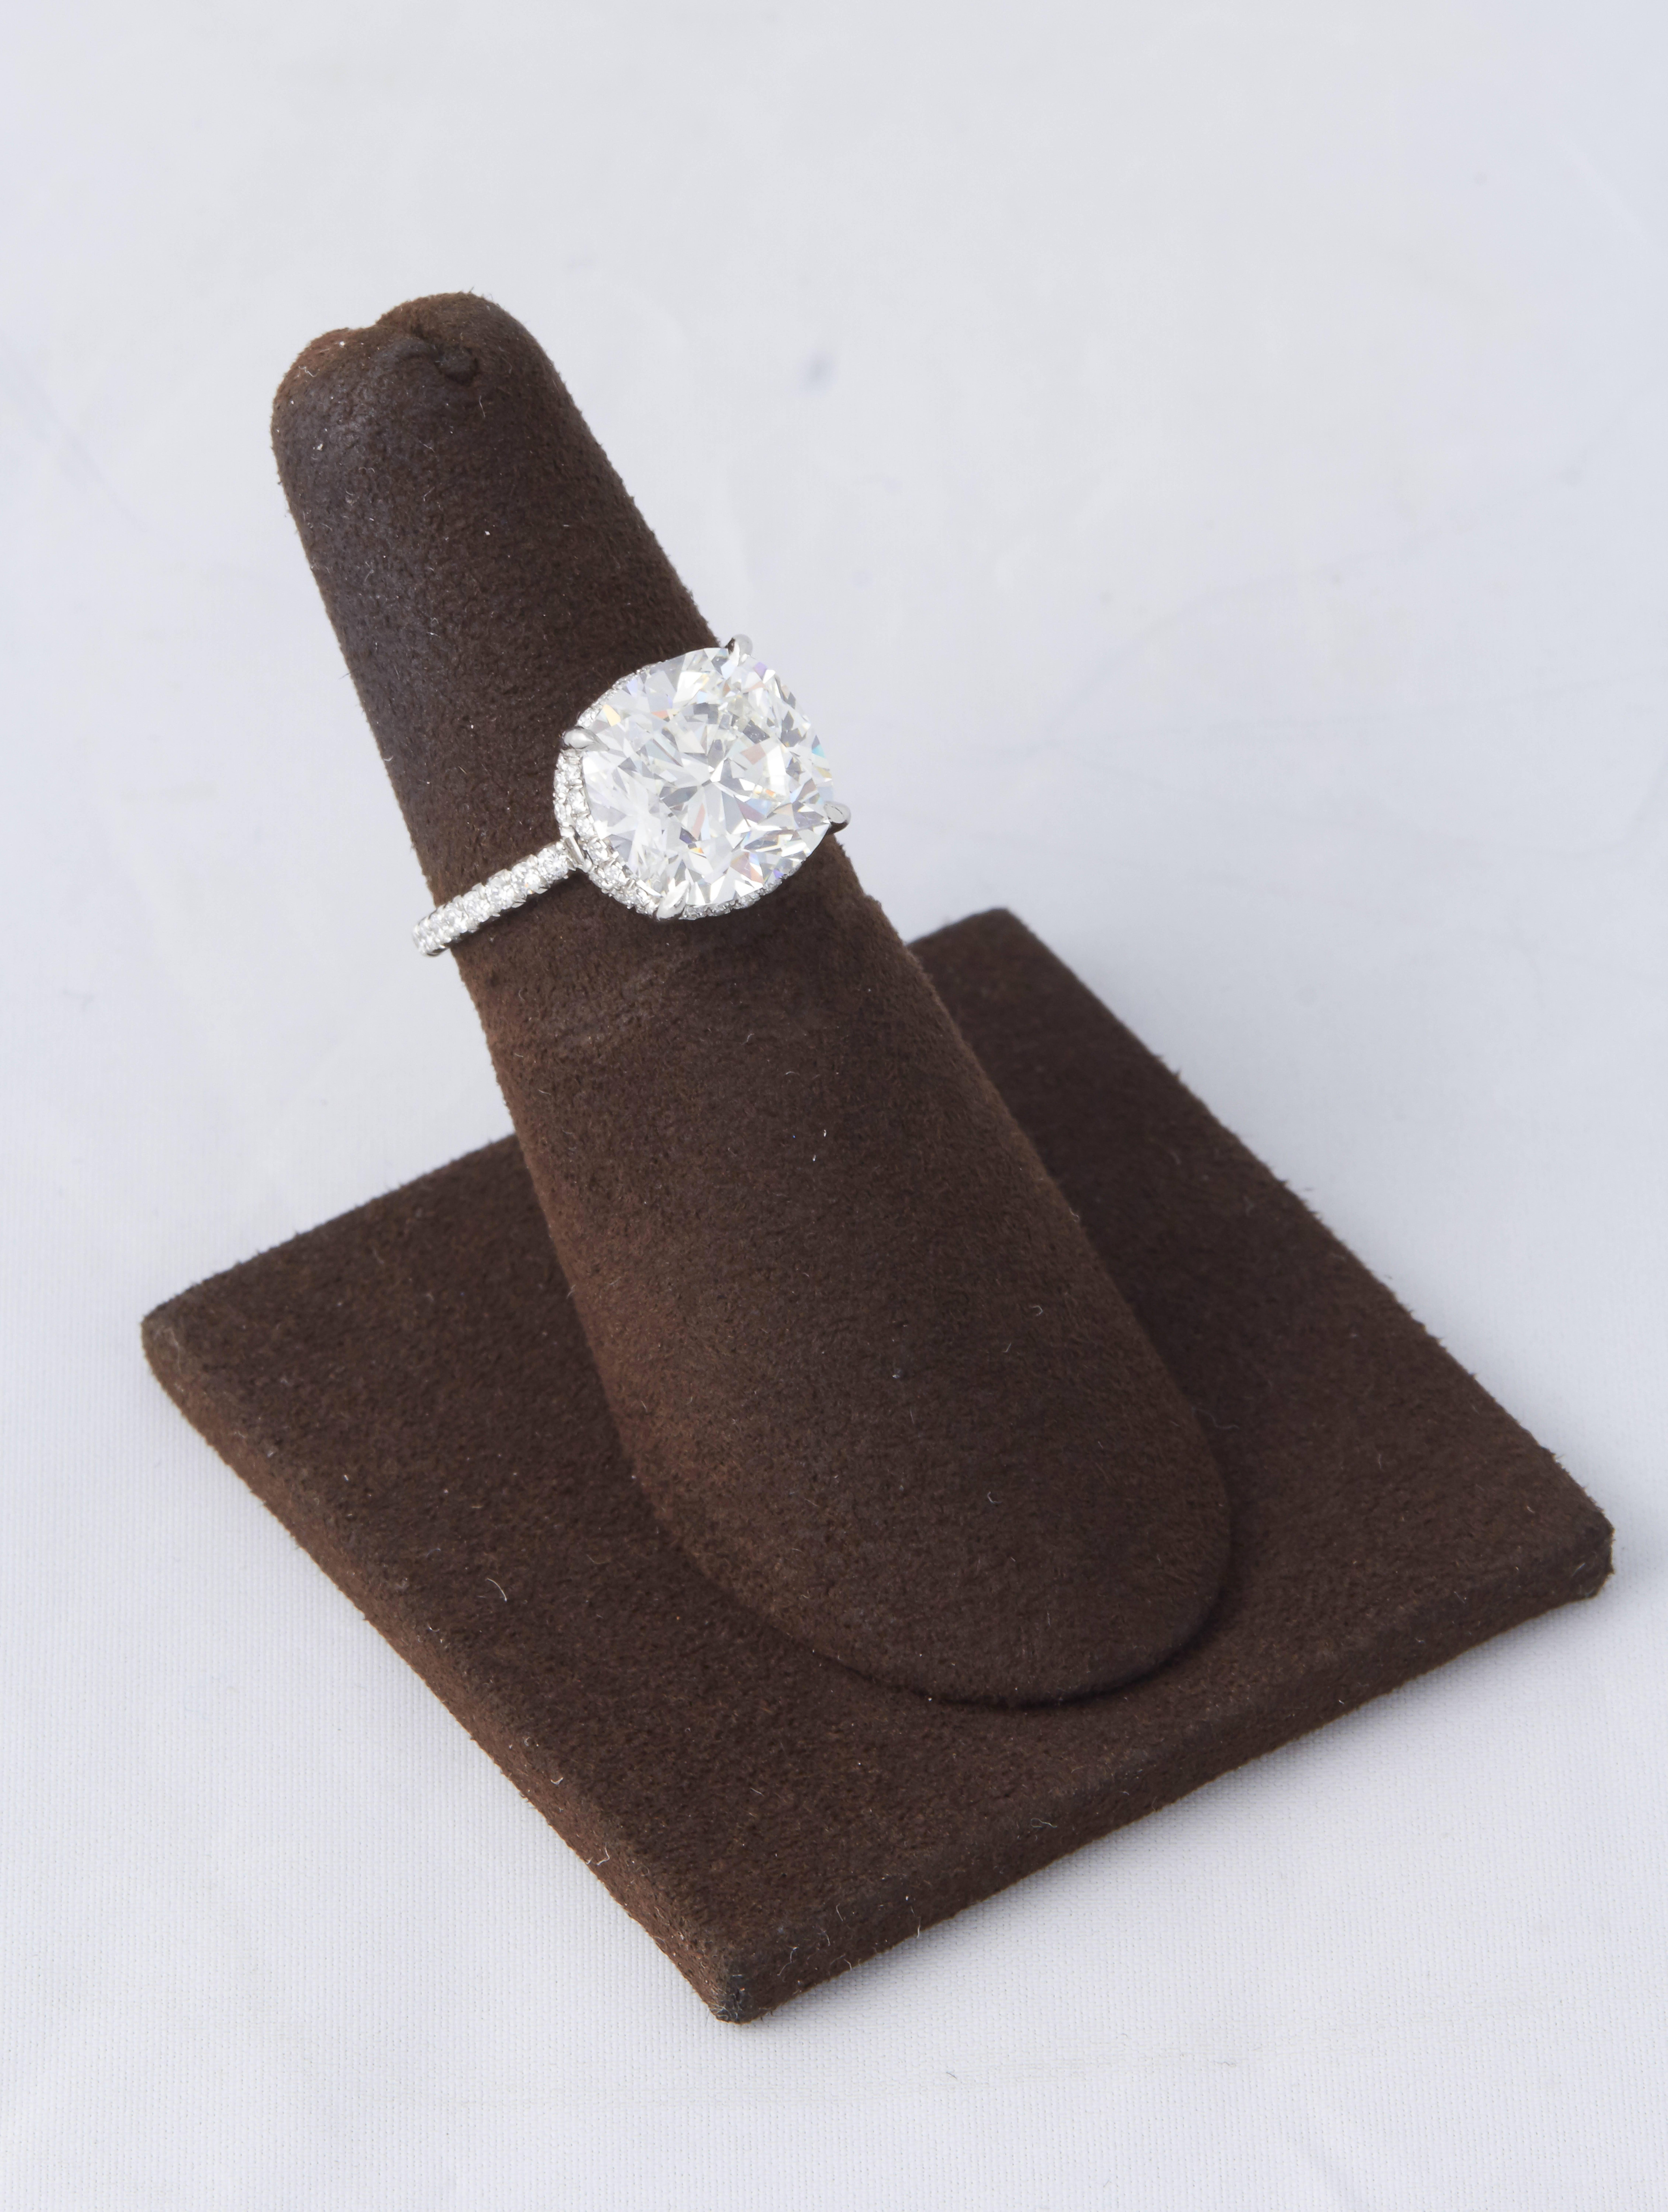 

Un diamant magnifique et saisissant serti dans une élégante monture délicate. 

5.01 Diamant brillant coussin certifié GIA de couleur H et de pureté VS1. 

Une coupe unique, ce brillant coussin est plein de vie et d'éclat.

La monture en platine